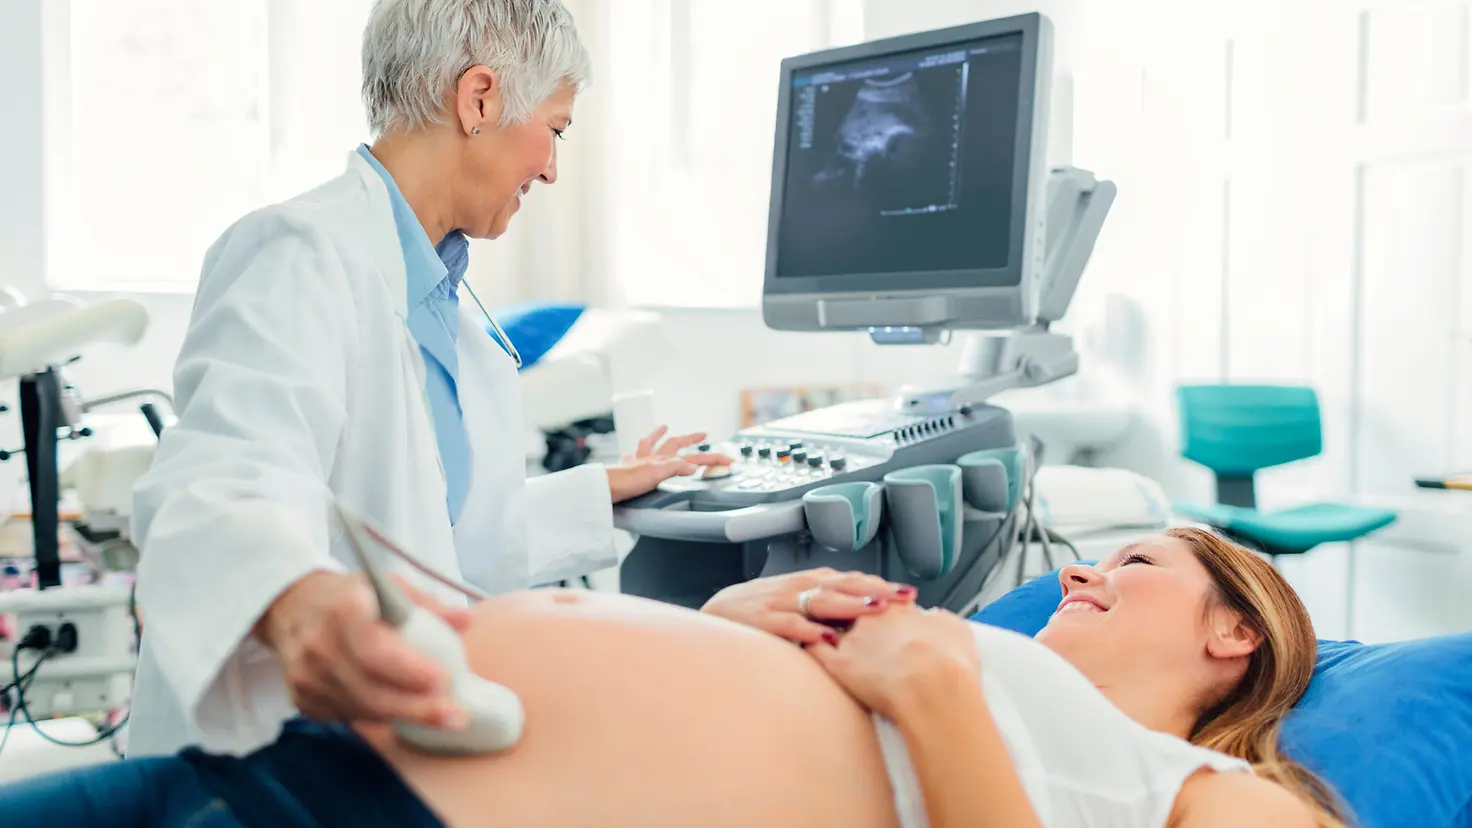 Eine schwangere Frau auf einer Behandlungsliege erhält eine Ultraschalluntersuchung von einer Ärztin.